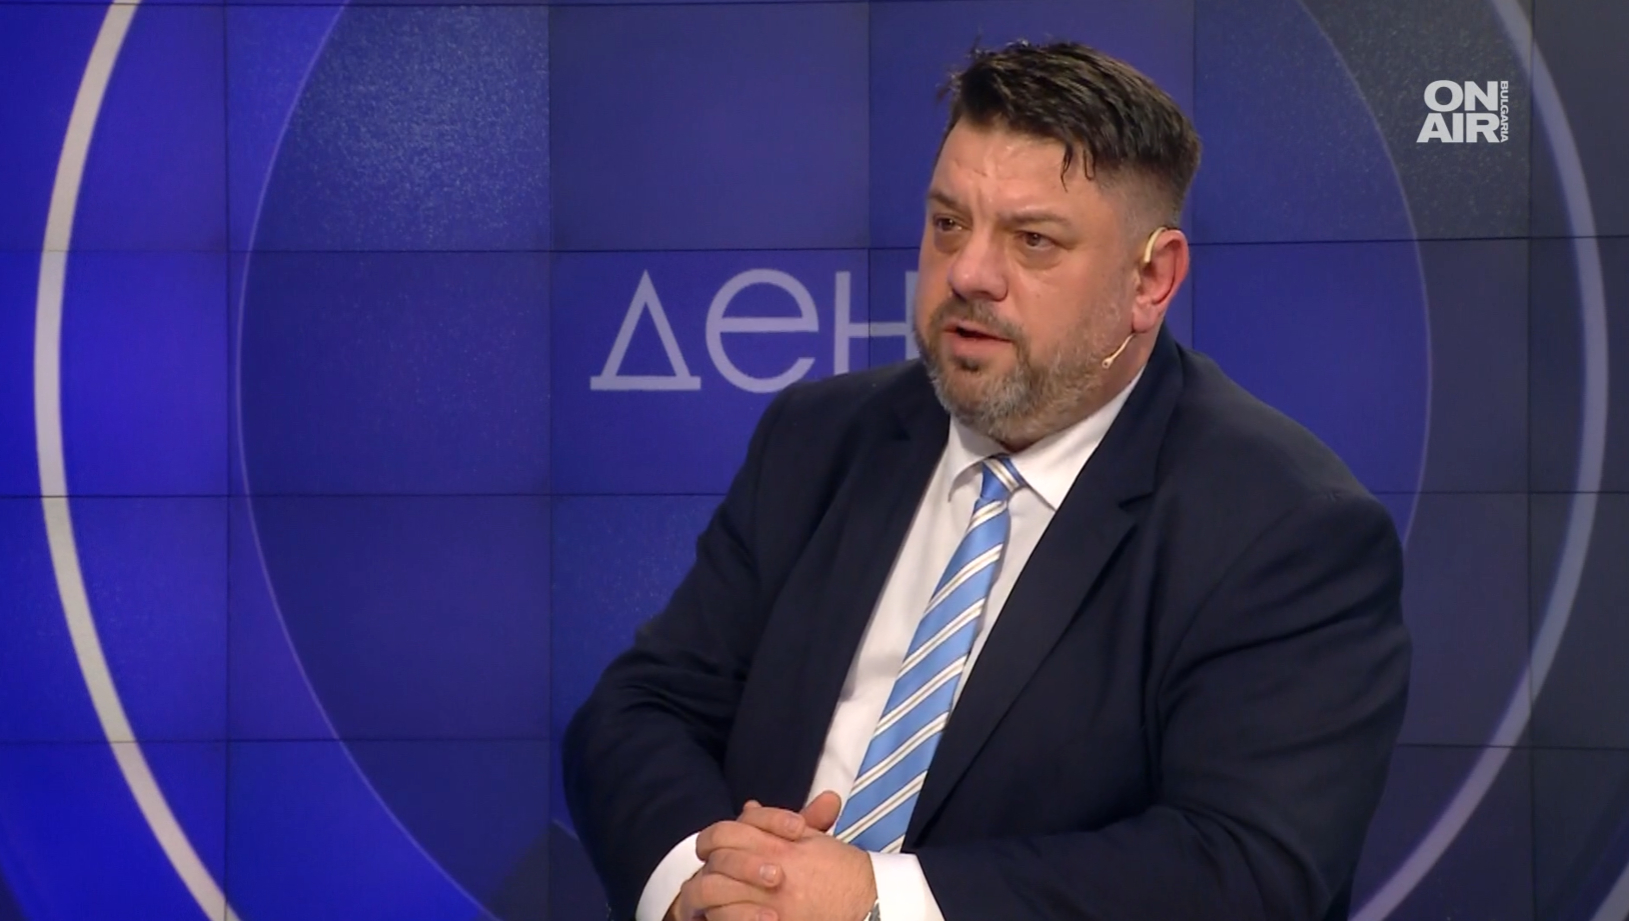 Атанас Зафиров: Главчев е изцяло под контрола на Борисов